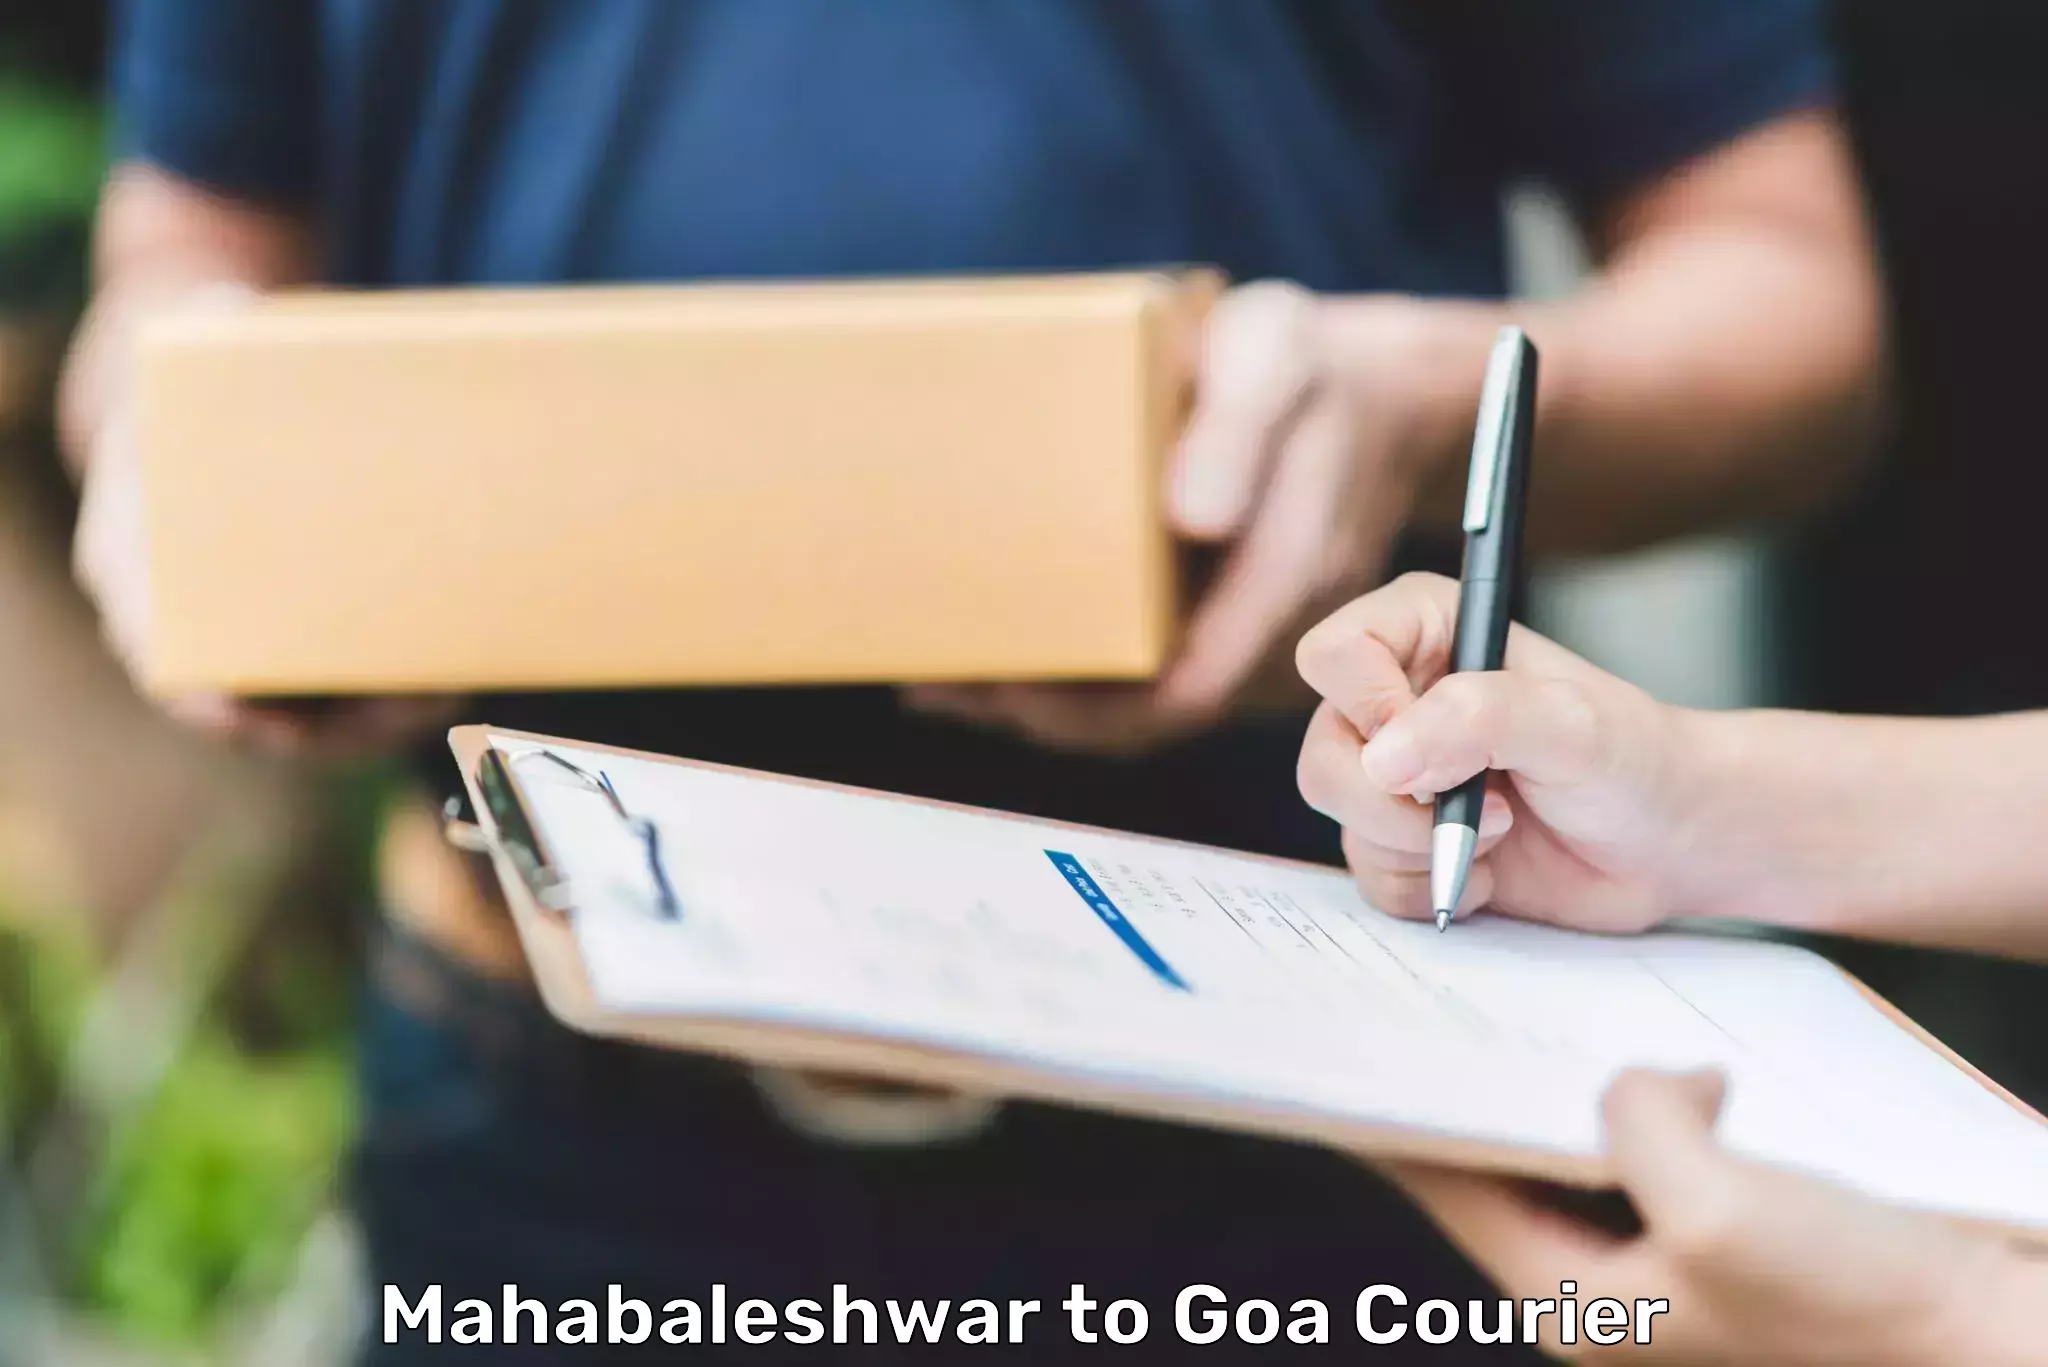 Customer-centric shipping Mahabaleshwar to IIT Goa